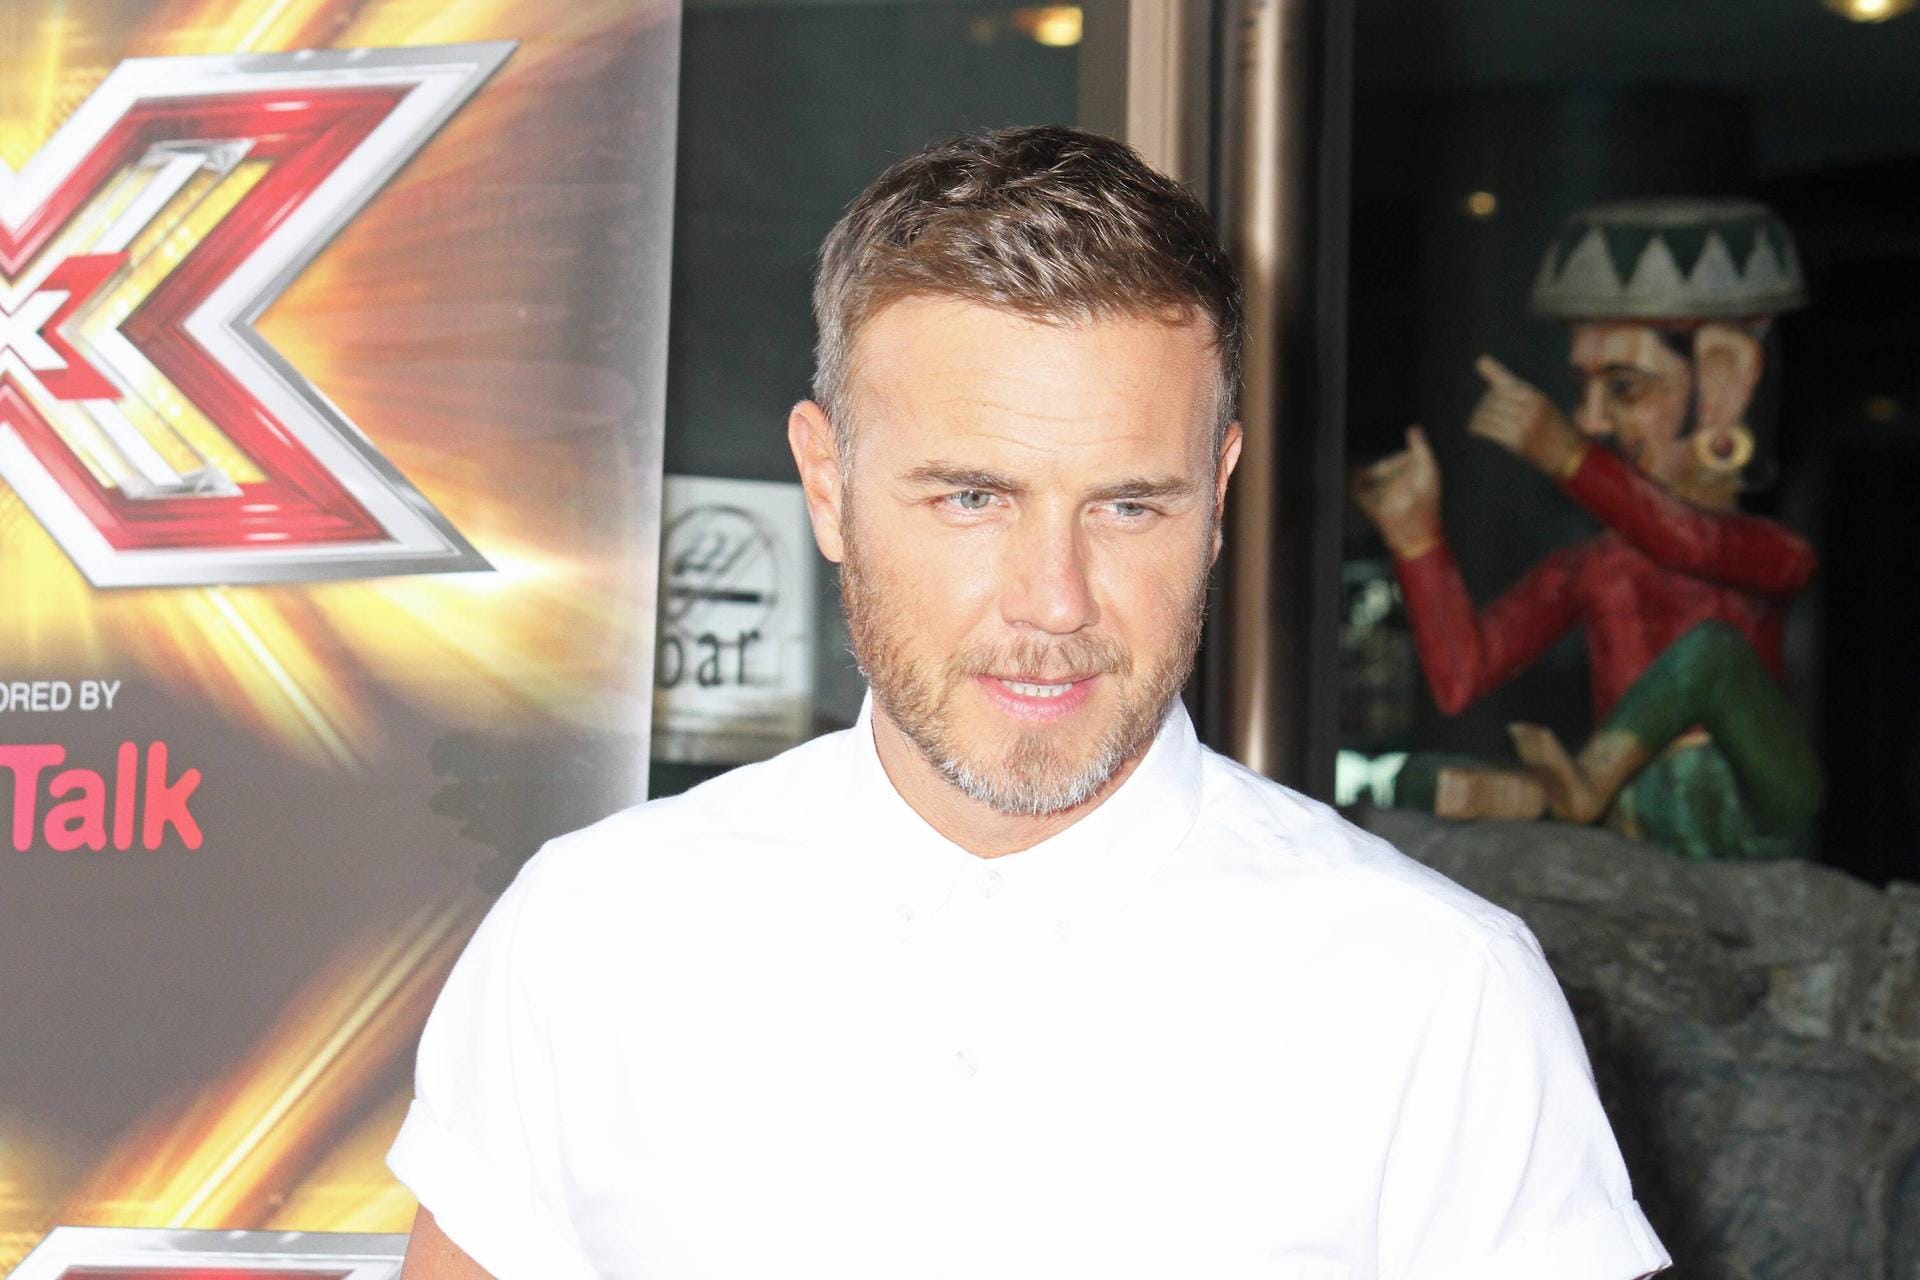 Sänger und Juror: Bei "The X Factor" saß Gary Barlow 2013 in der Jury.